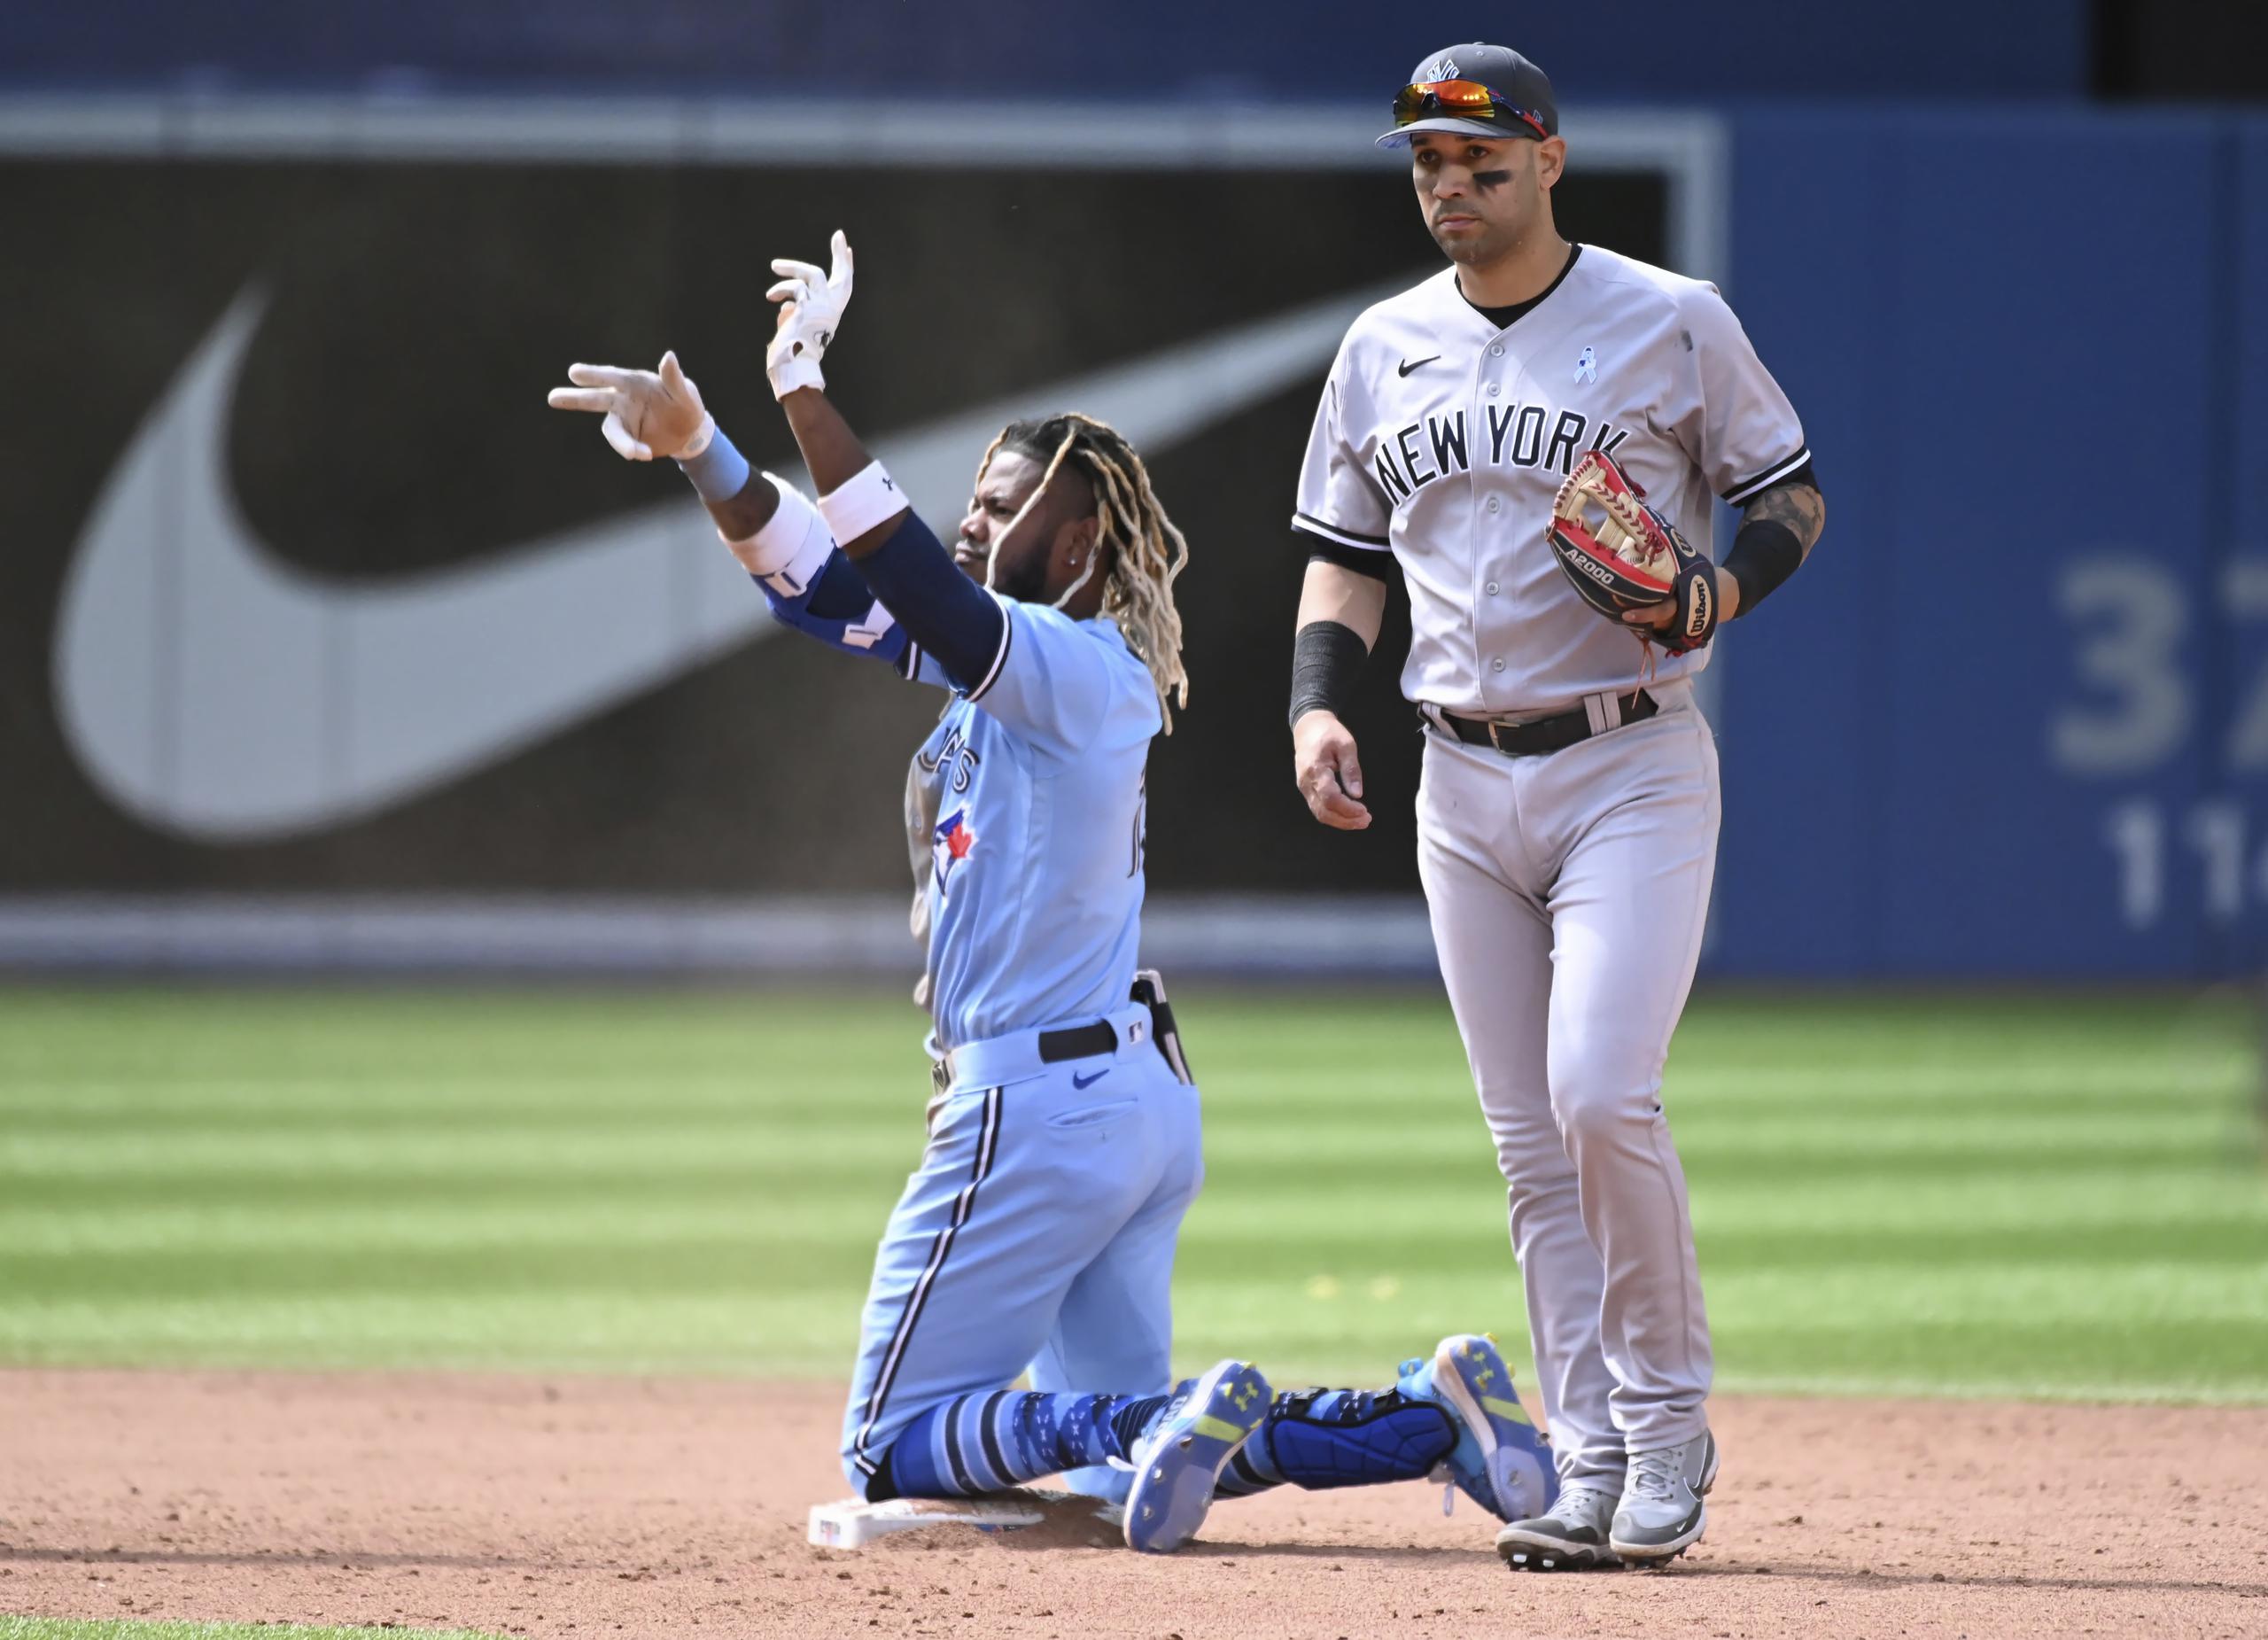 El jardinero derecho de Blue Jays de Toronto, Raimel Tapia, celebra con el dugout después de llegar safe en segunda base con barrida, evitando el toque de Marwin González, derecha, de los Yankees, para conseguir un doblete en la sexta entrada del juego de béisbol en Toronto.